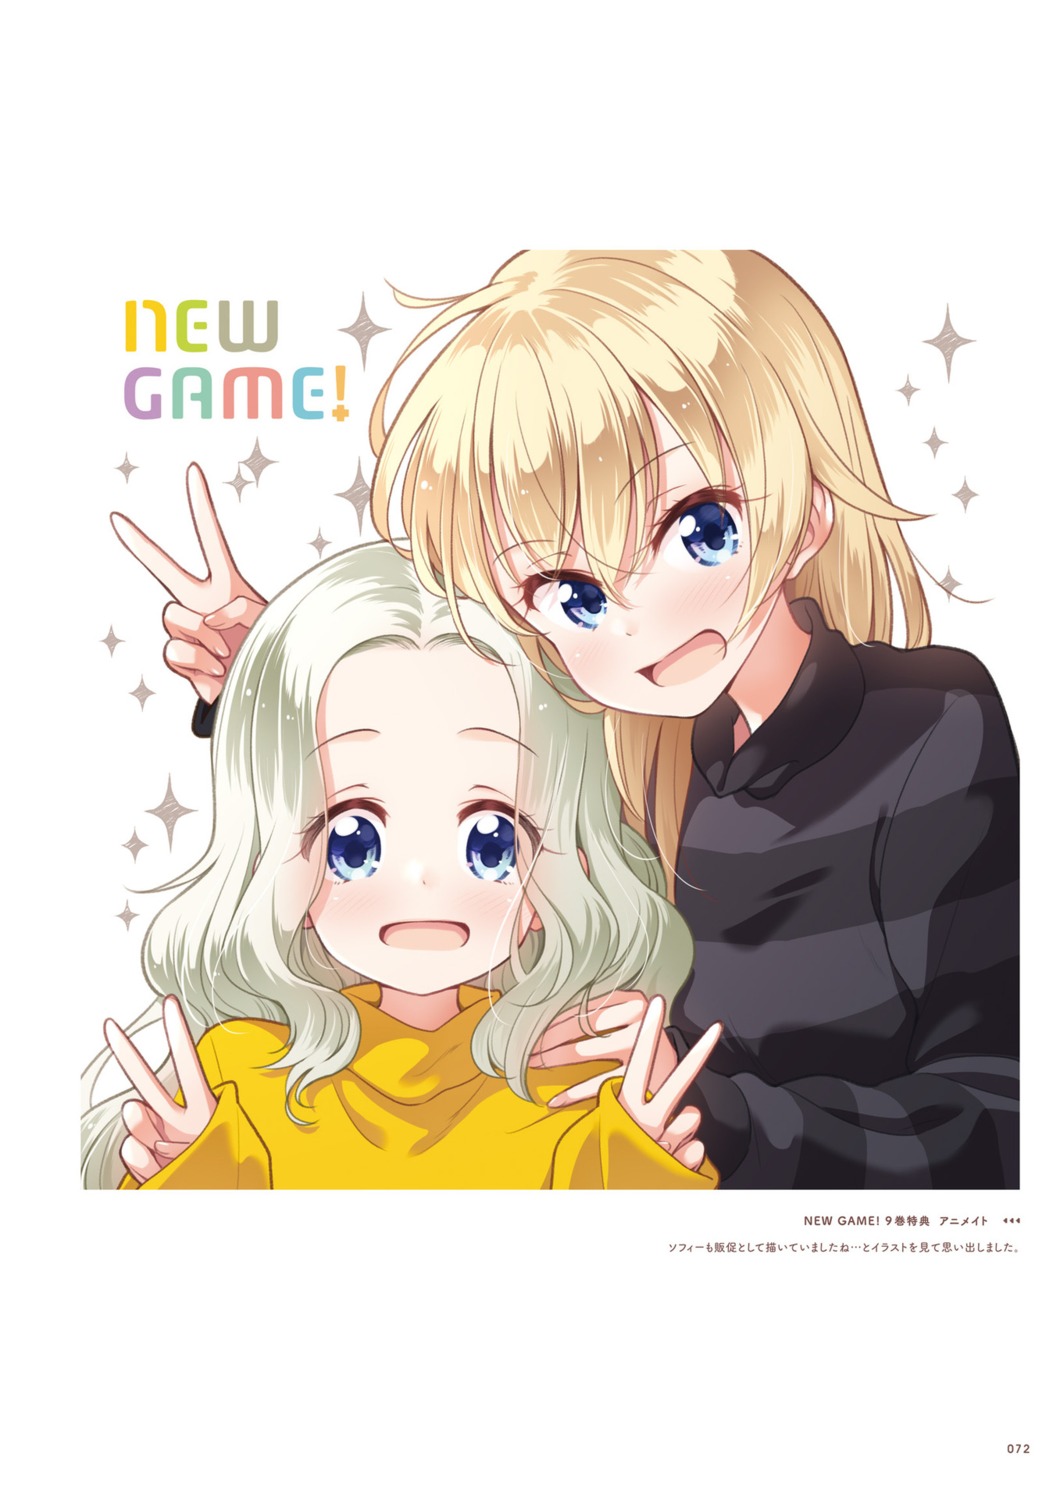 new_game! tokunou_shoutarou yagami_kou yamato_sophie_waon